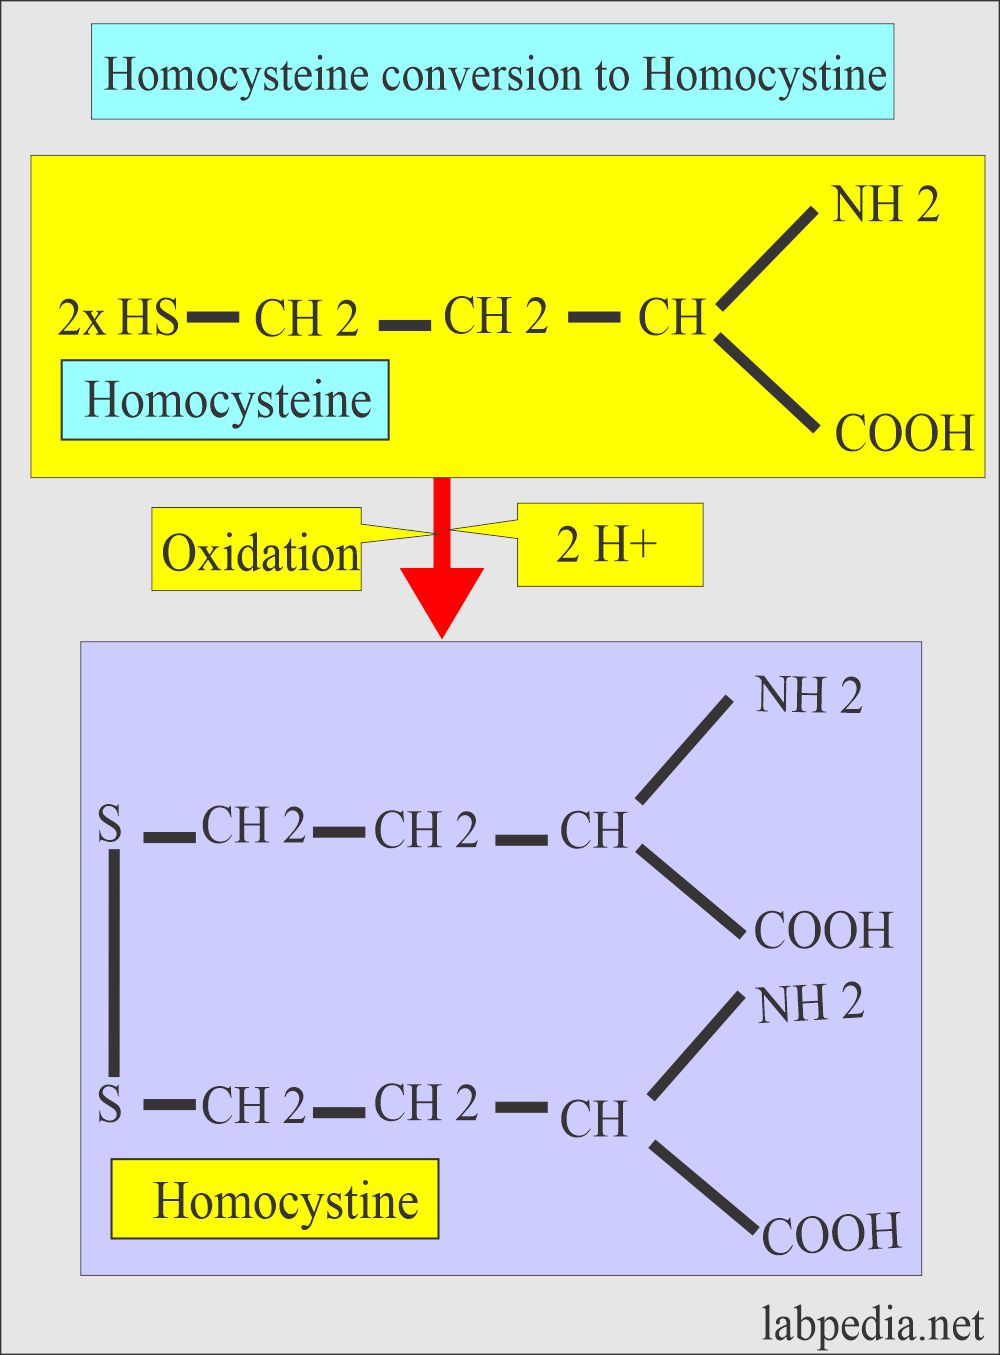 Homocysteine conversion to Homocystine